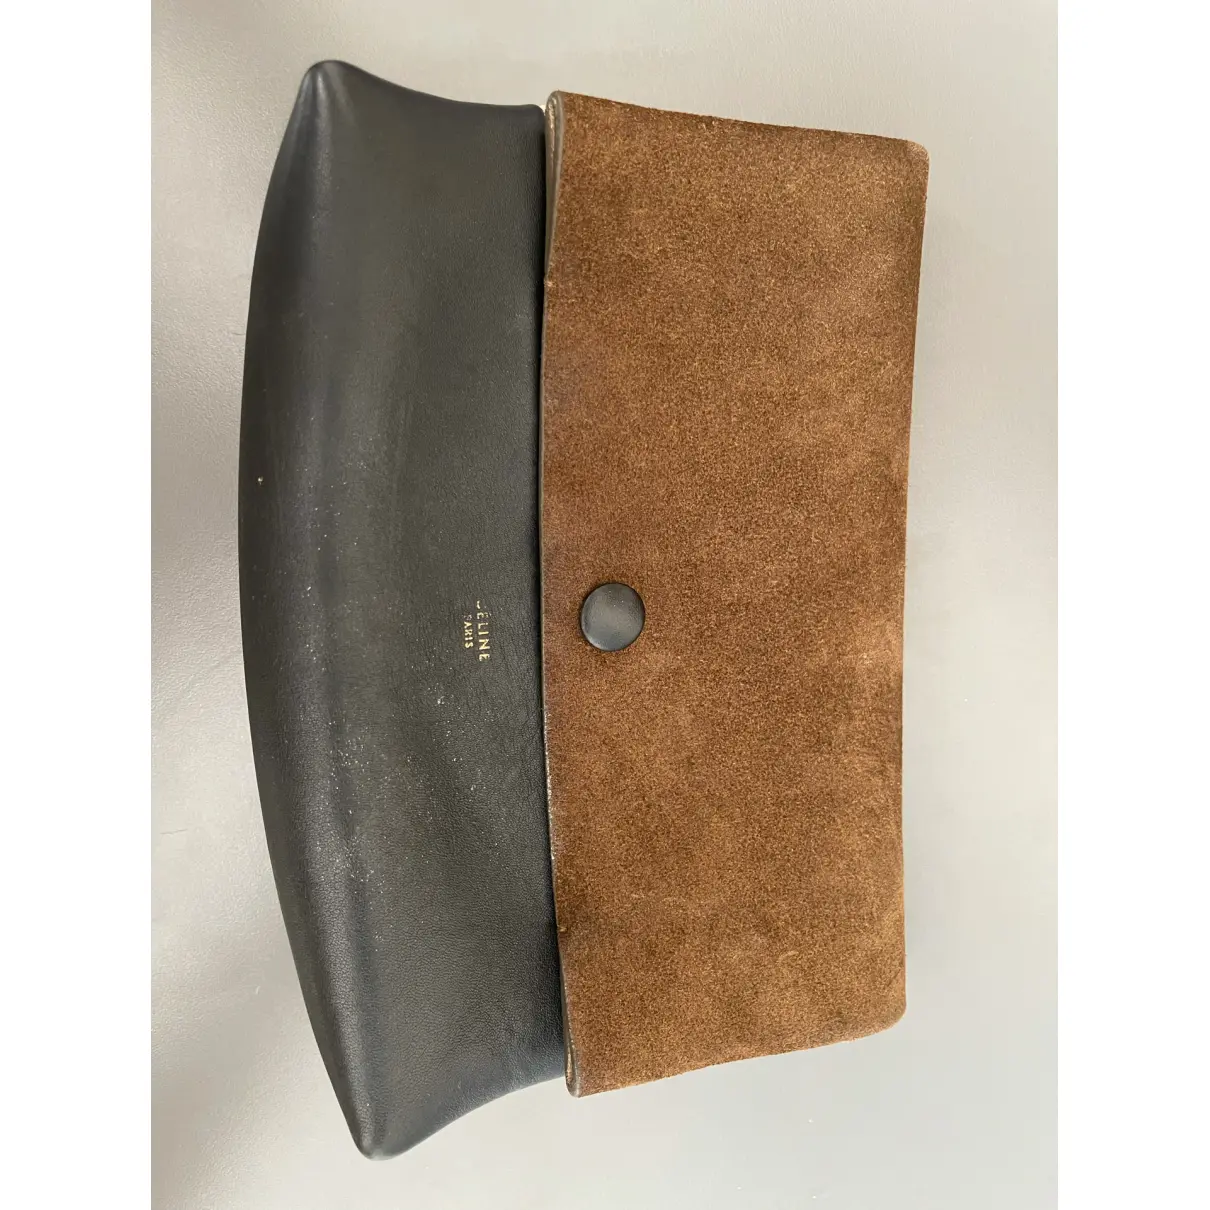 Buy Celine All Soft leather handbag online